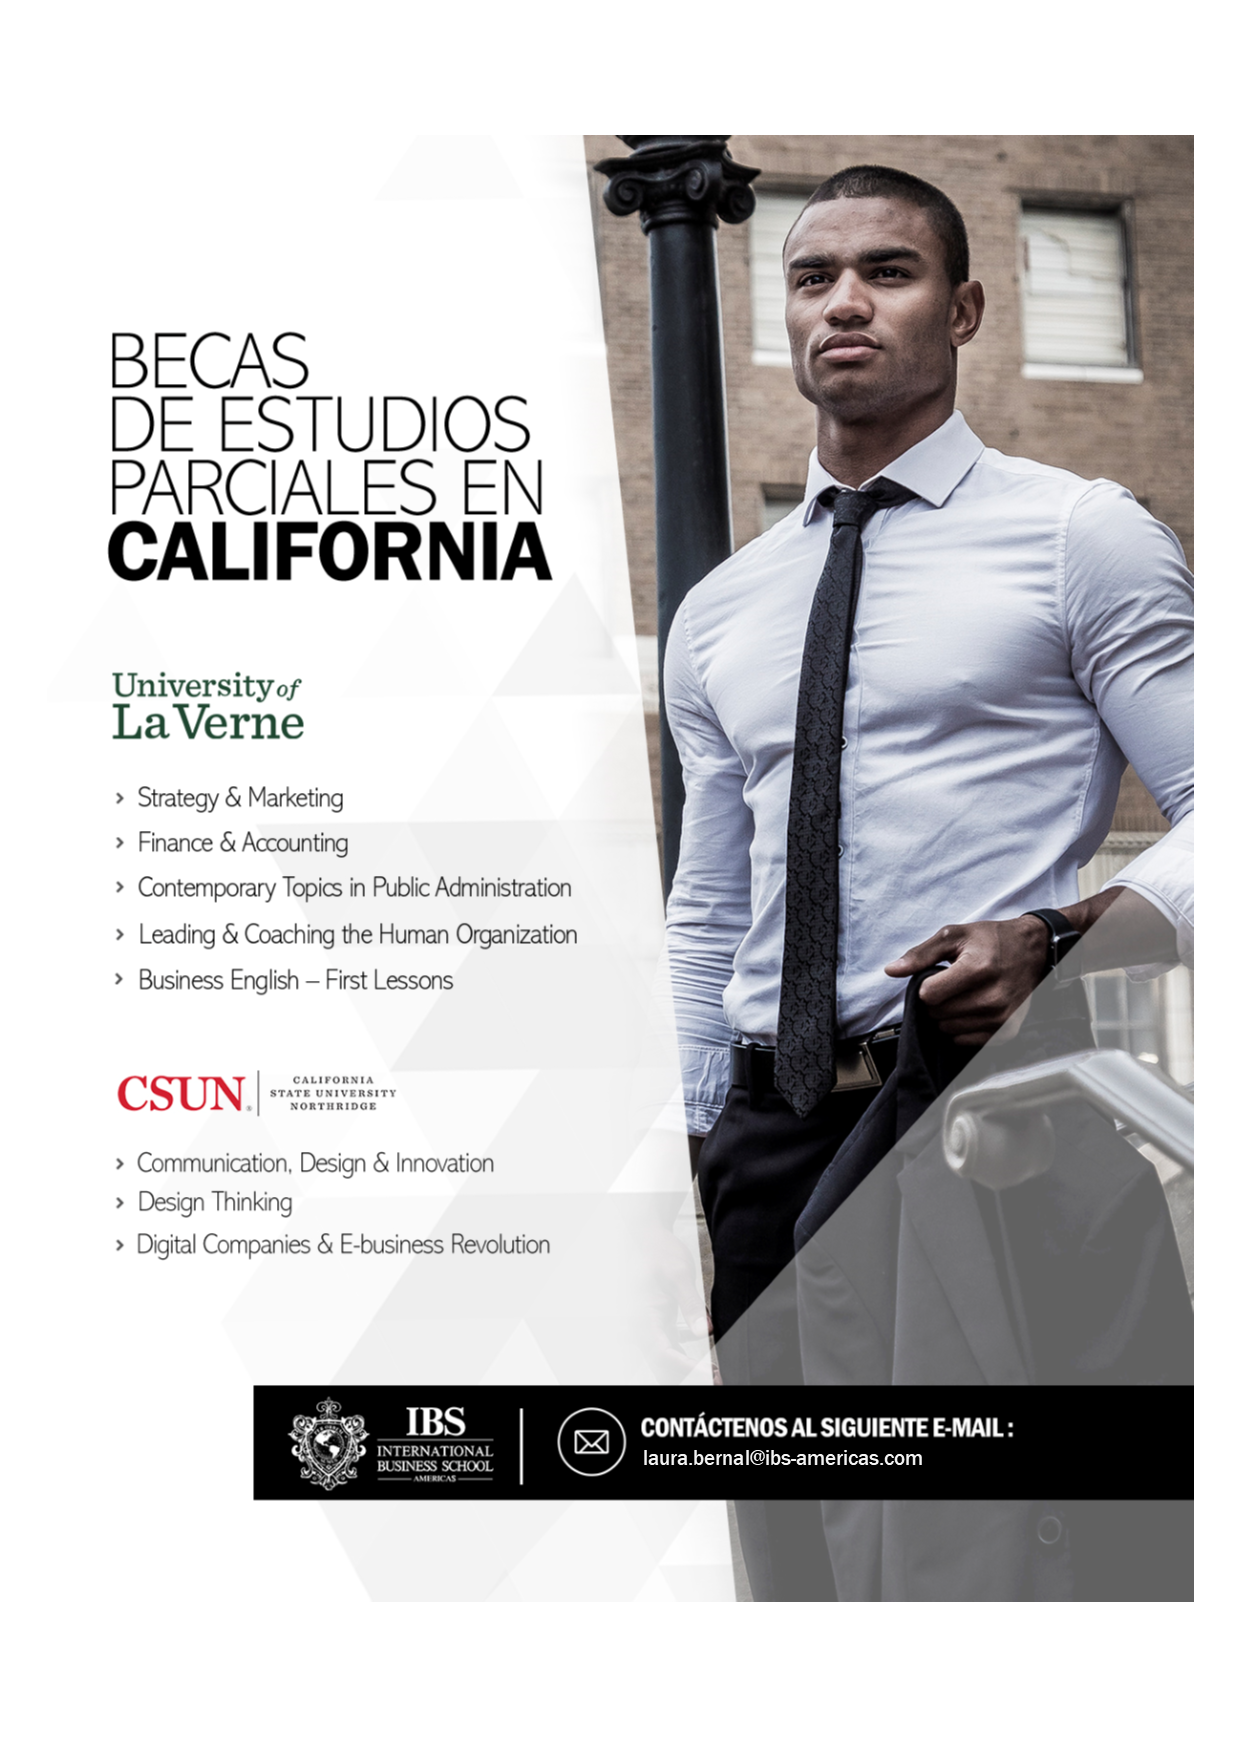 Programas de becas parciales en la California State University, Northridge y University of La Verne.